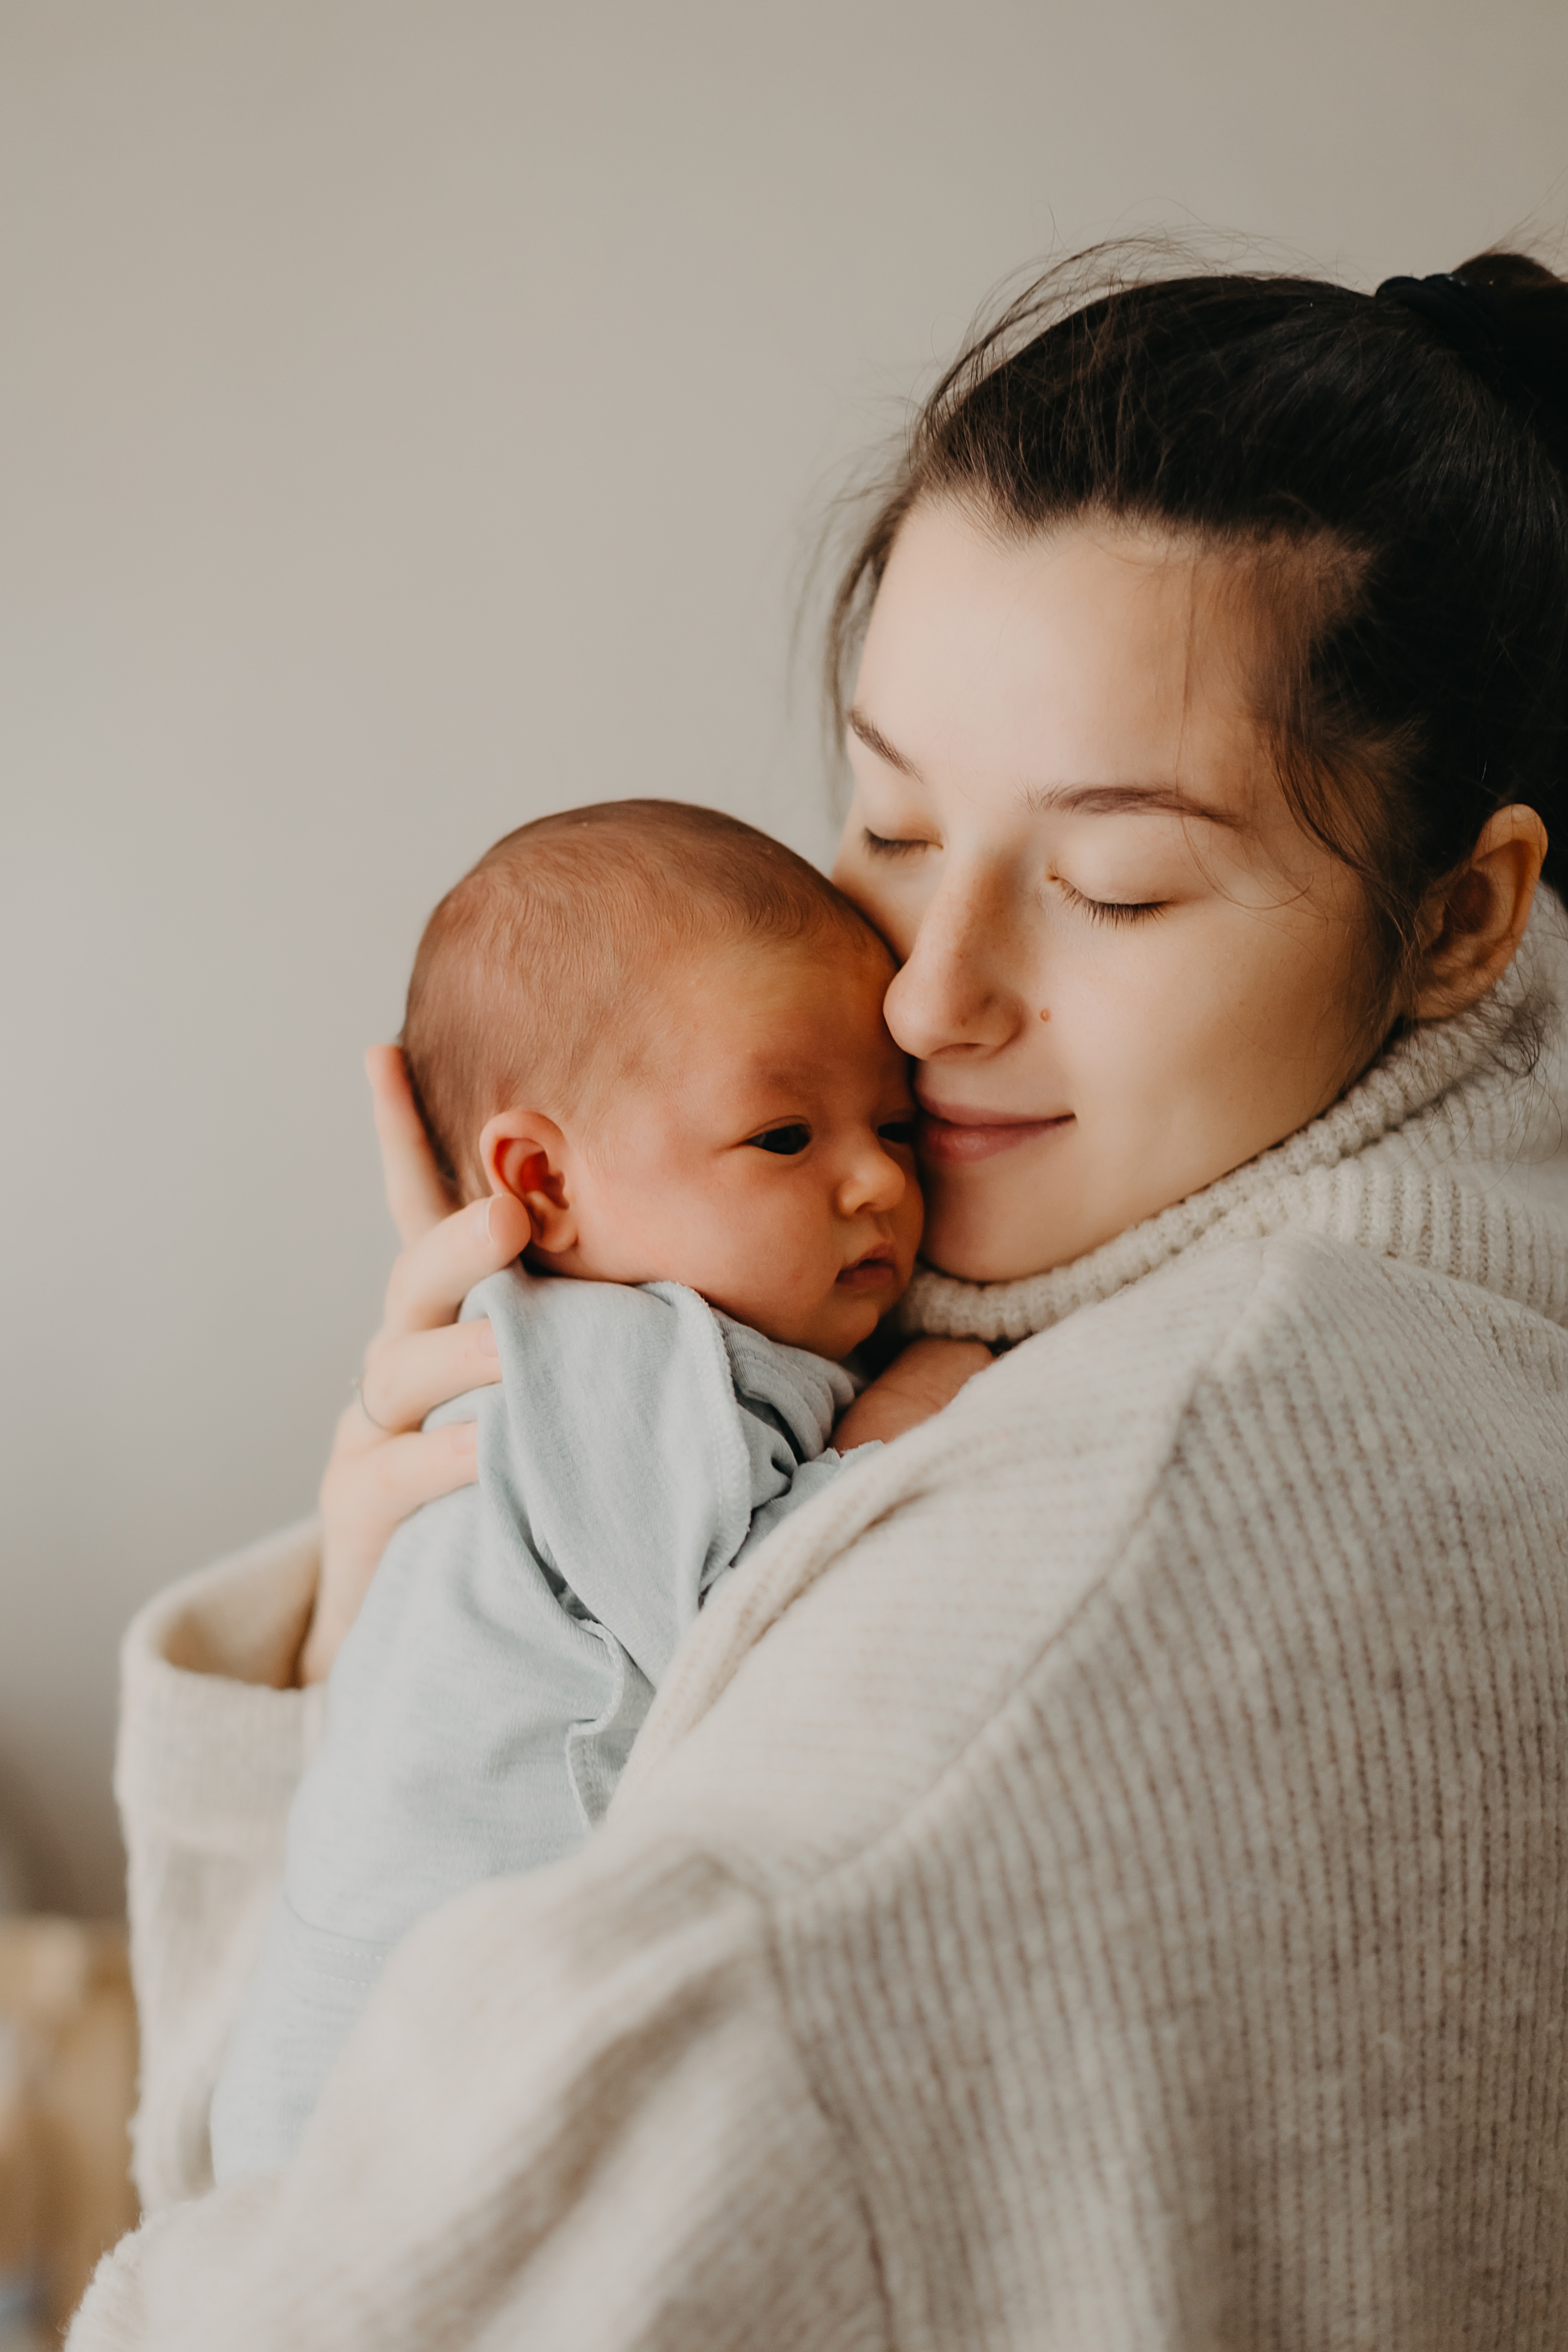 Une mère avec son bébé | Source : Shutterstock